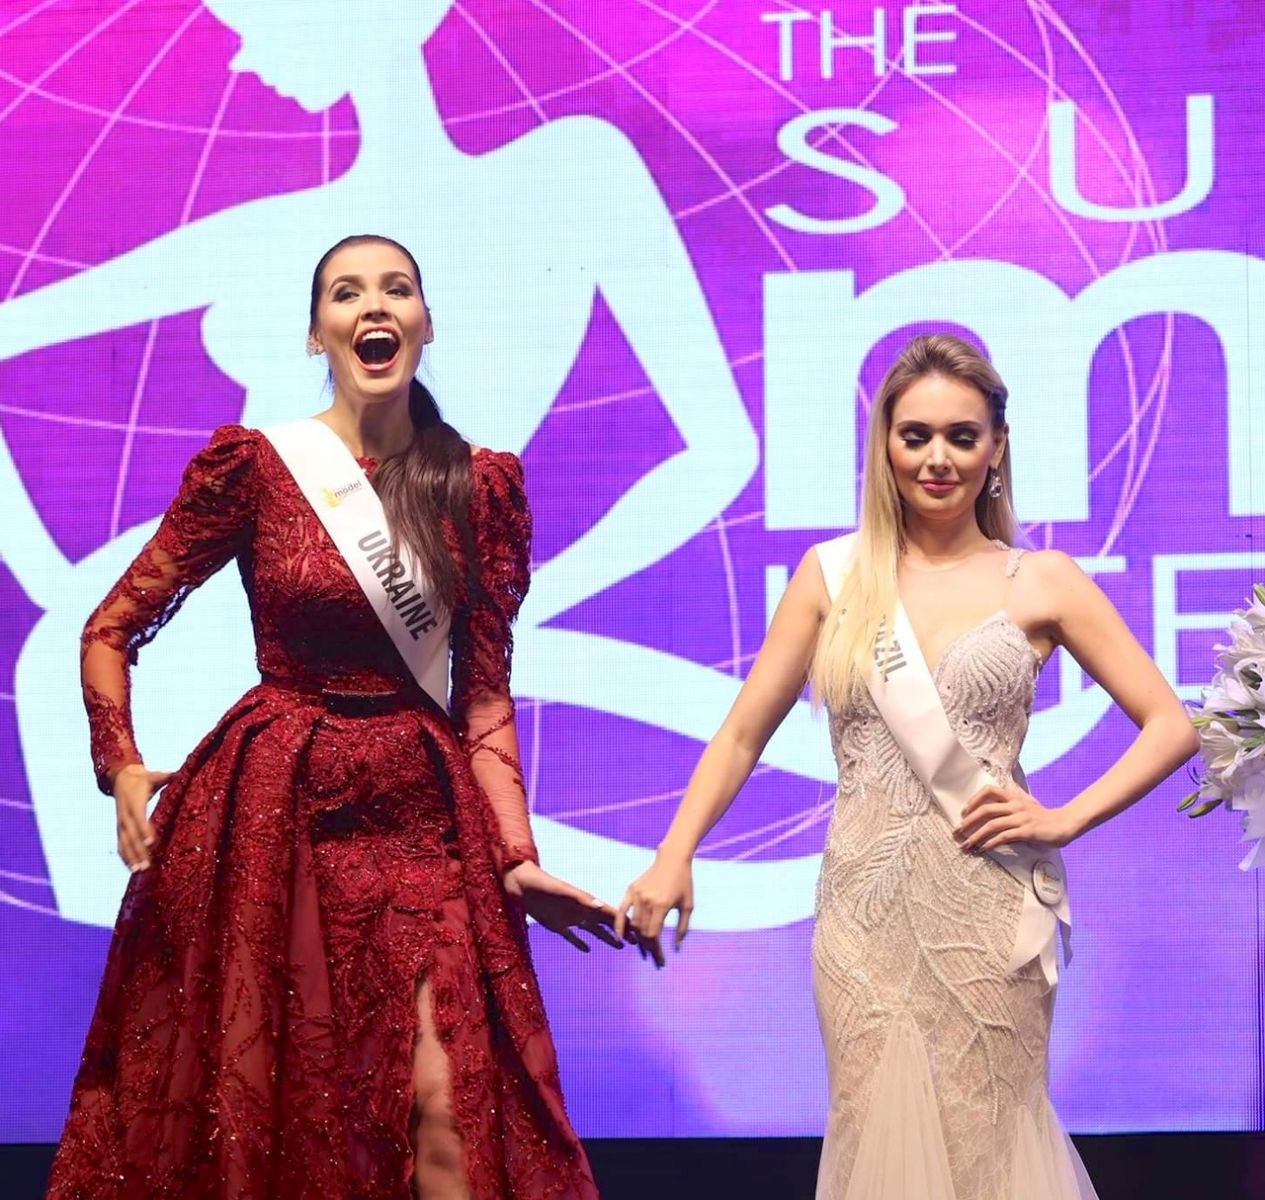 Будущий ангел Victoria’s Secret: 19-летняя киевлянка победила на конкурсе красоты в Индии